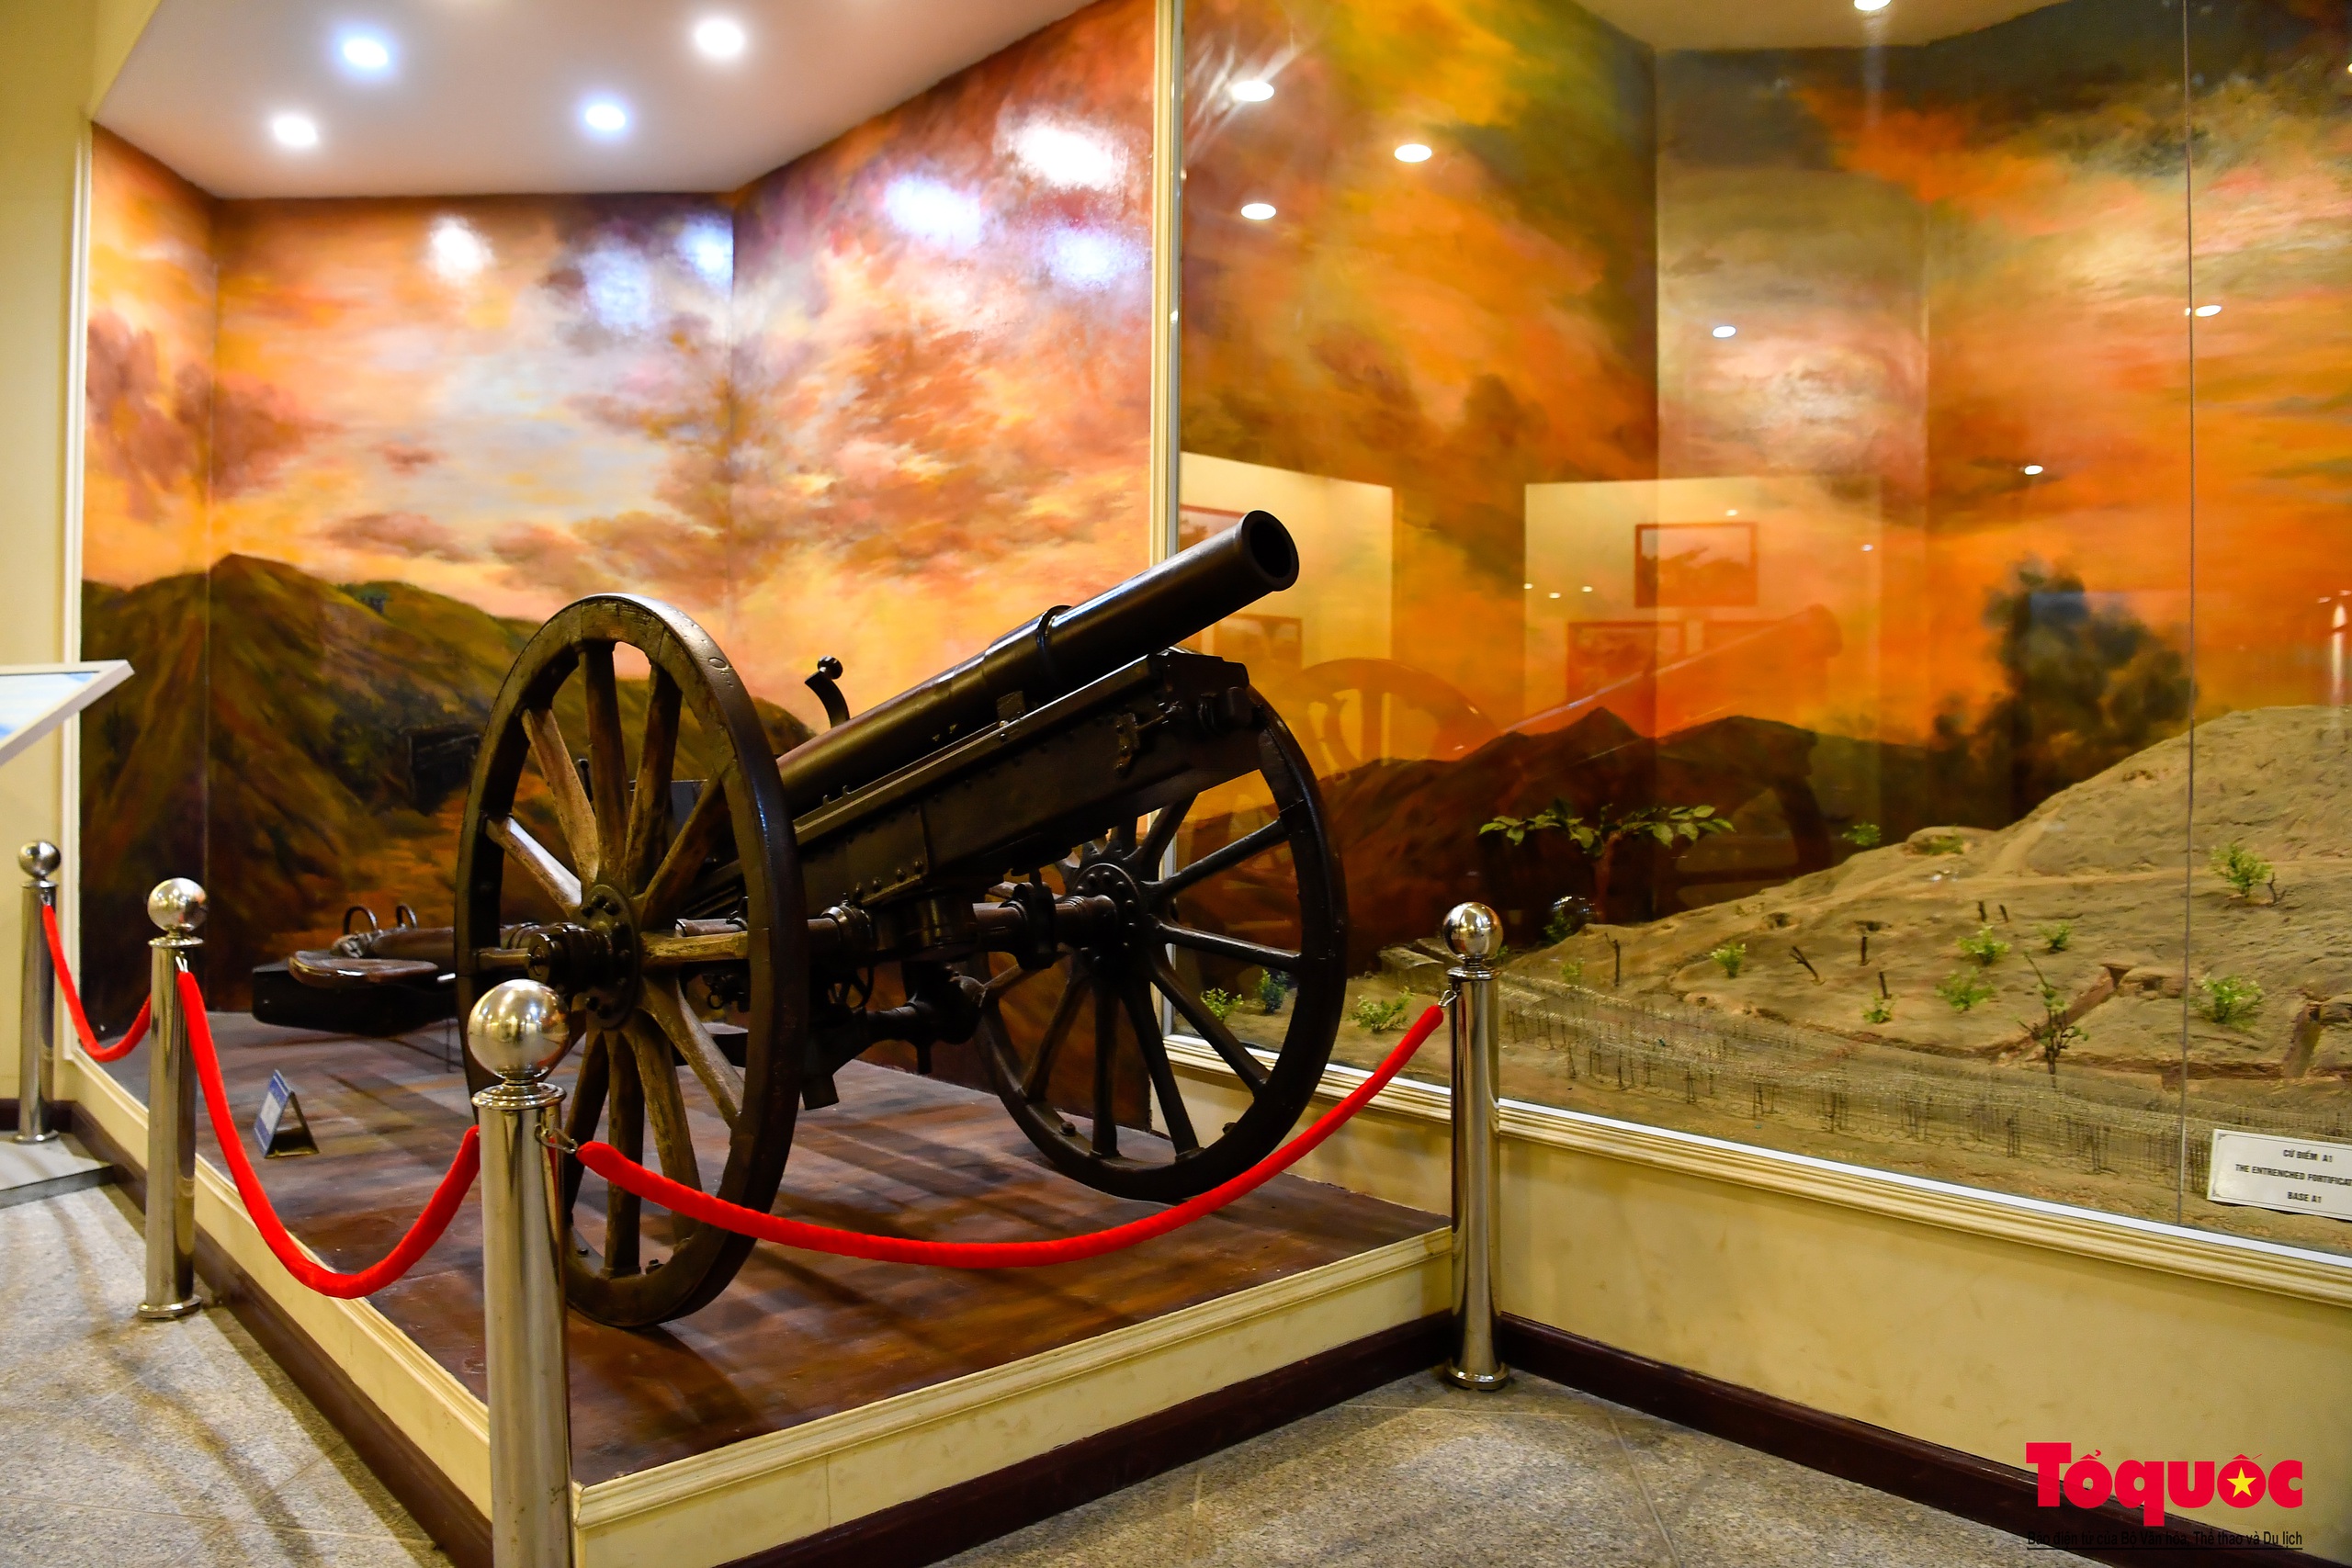 Bảo tàng Chiến thắng lịch sử Điện Biên Phủ - điểm đến ý nghĩa trong những ngày tháng 5 - Ảnh 14.